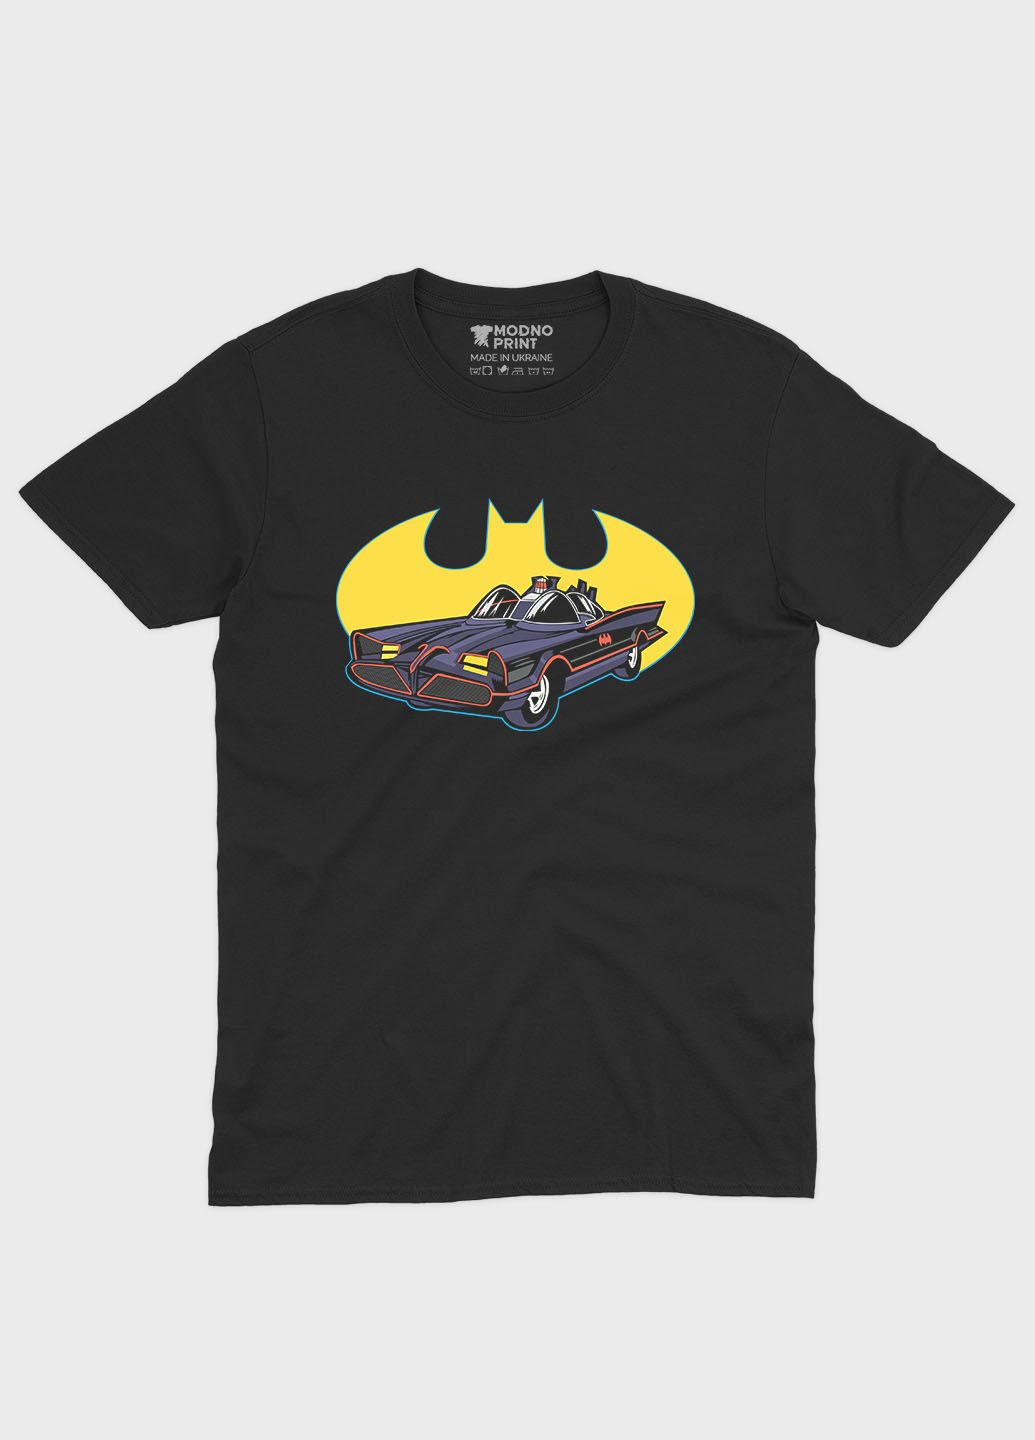 Чорна демісезонна футболка для хлопчика з принтом супергероя - бетмен (ts001-1-bl-006-003-034-b) Modno